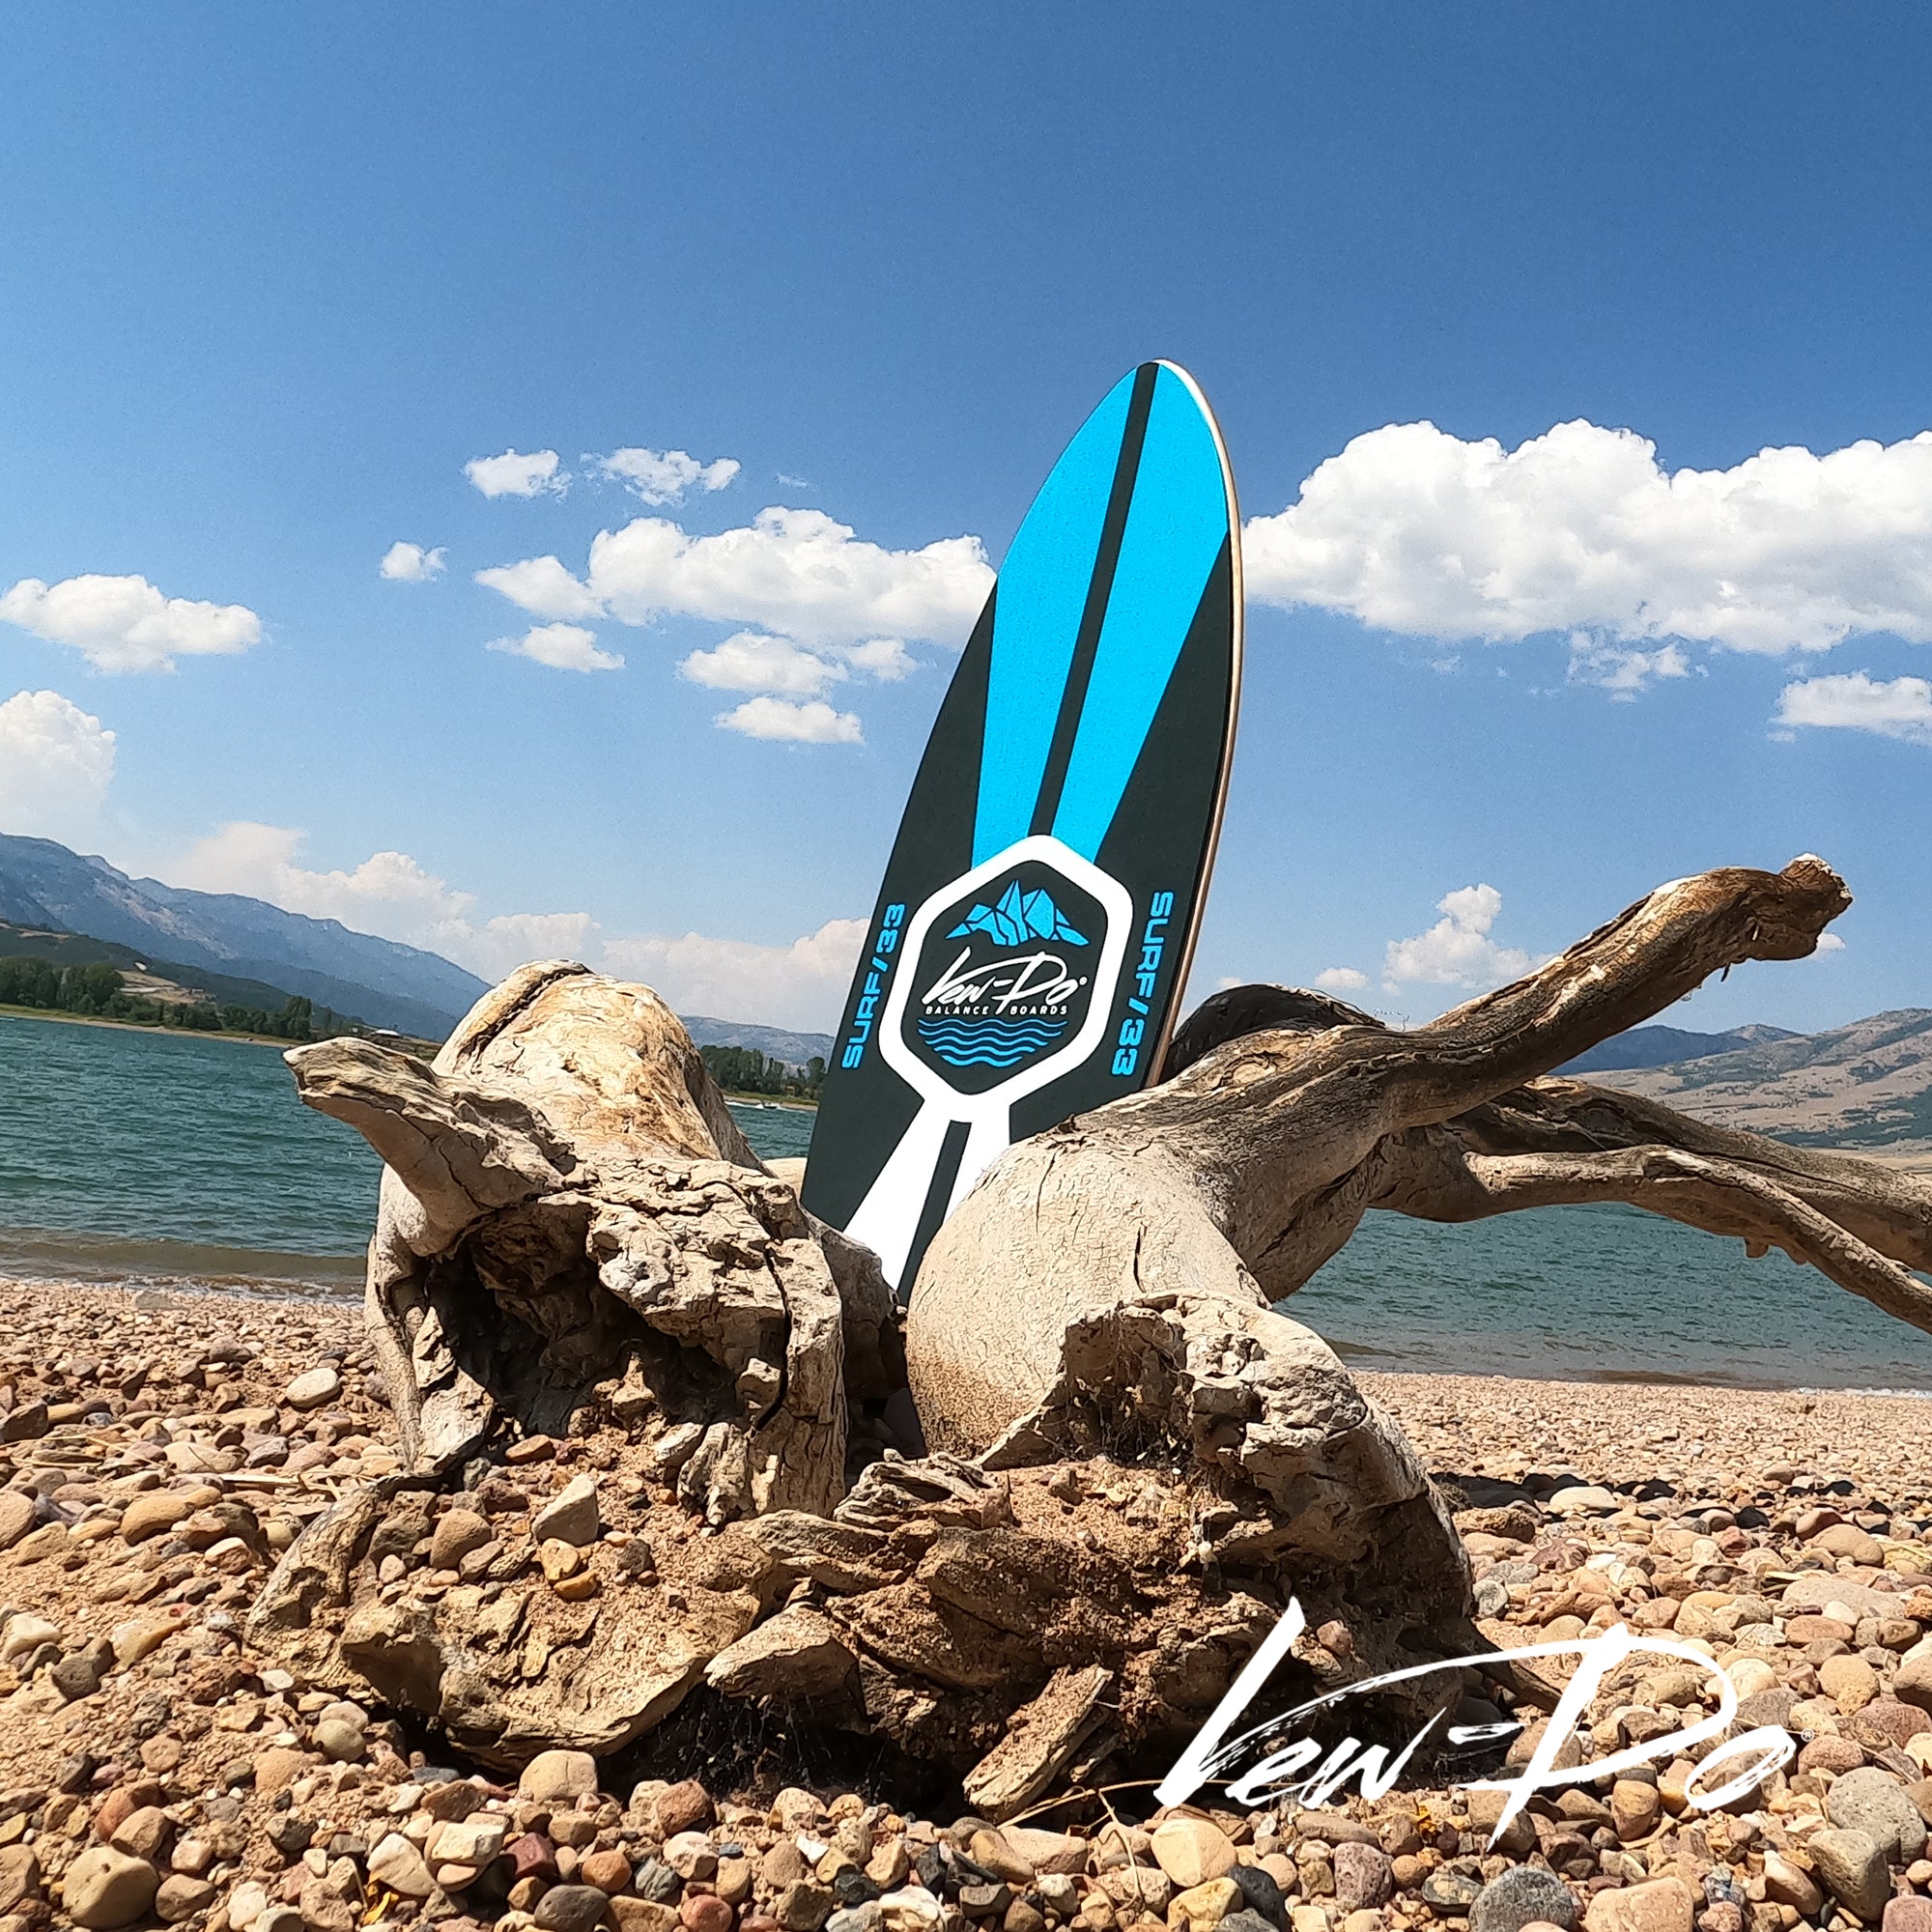 Balance Board qué es? - Wooden Surf – Wooden surf